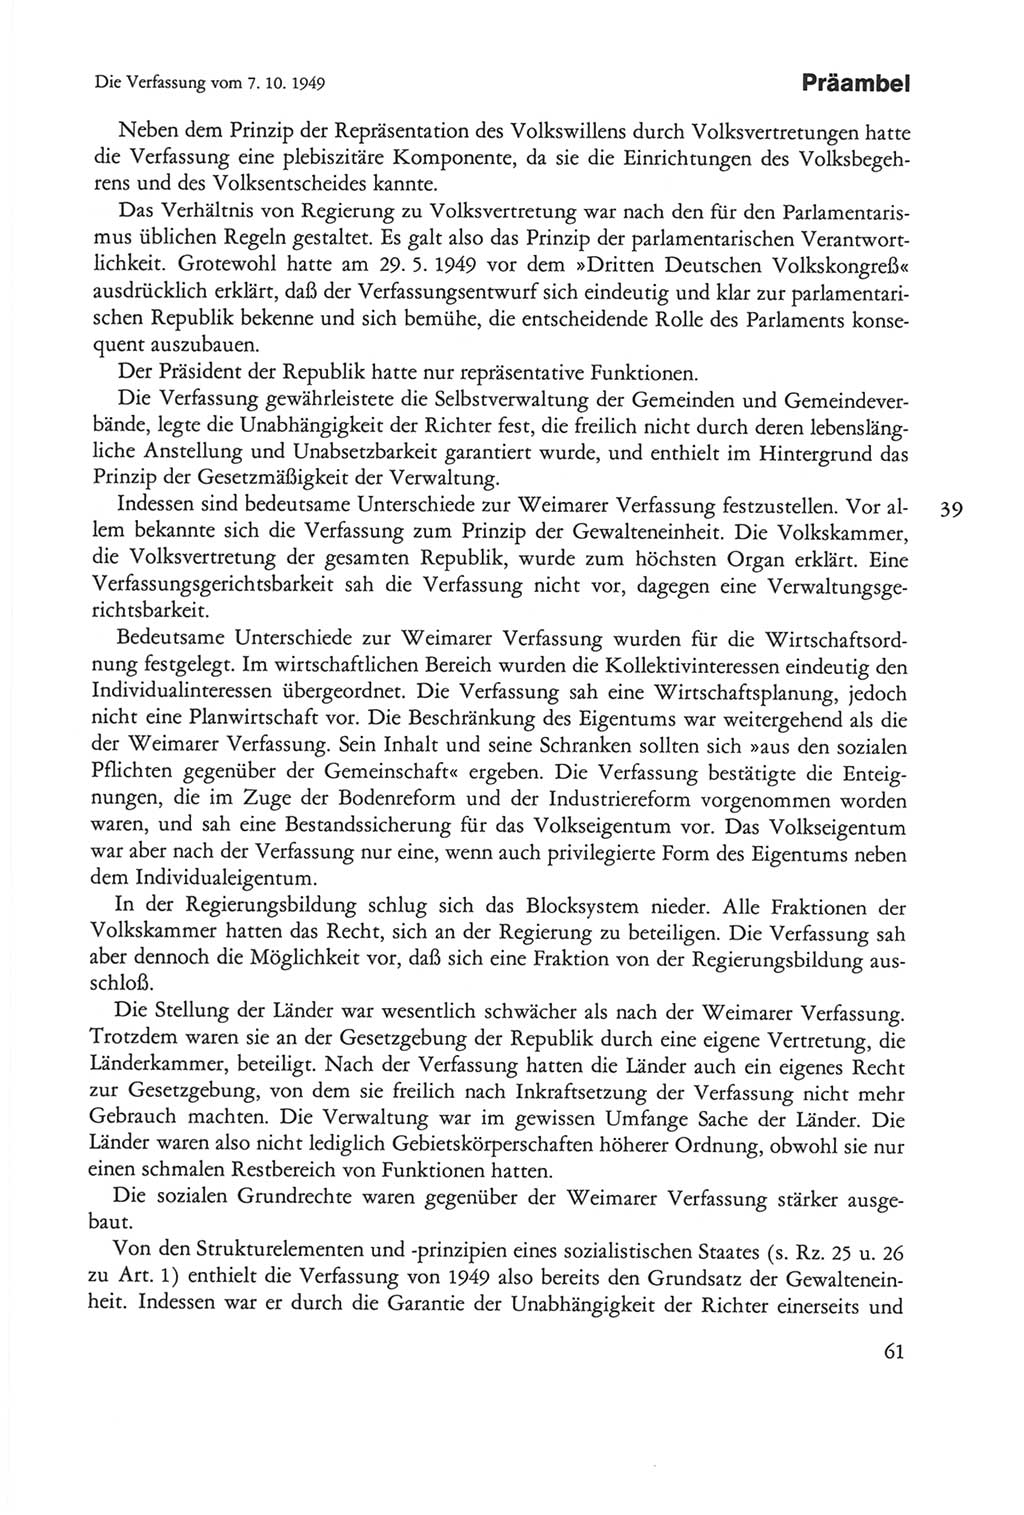 Die sozialistische Verfassung der Deutschen Demokratischen Republik (DDR), Kommentar mit einem Nachtrag 1997, Seite 61 (Soz. Verf. DDR Komm. Nachtr. 1997, S. 61)